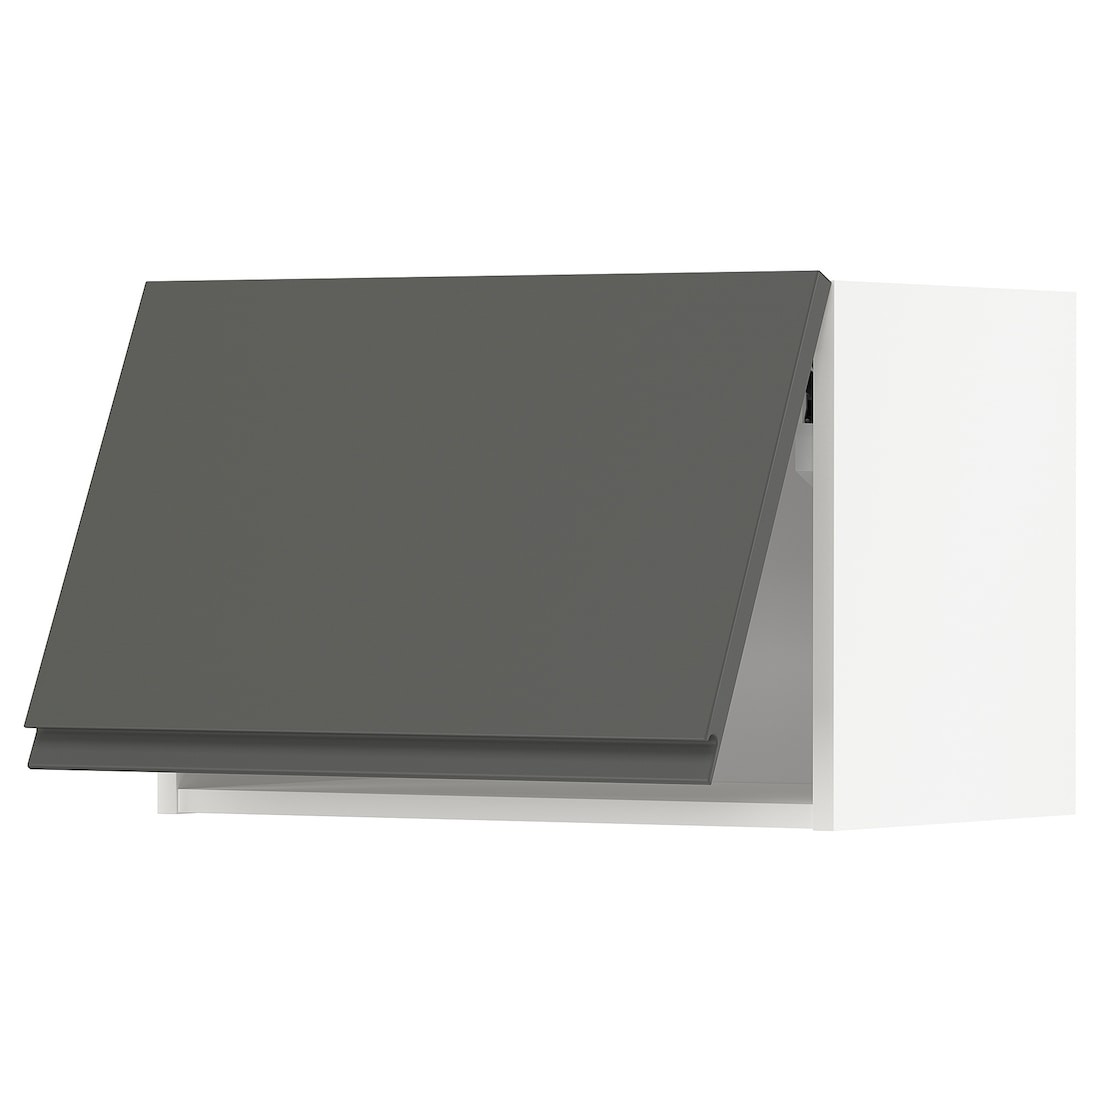 METOD МЕТОД Навесной горизонтальный шкаф, белый / Voxtorp темно-серый, 60x40 см